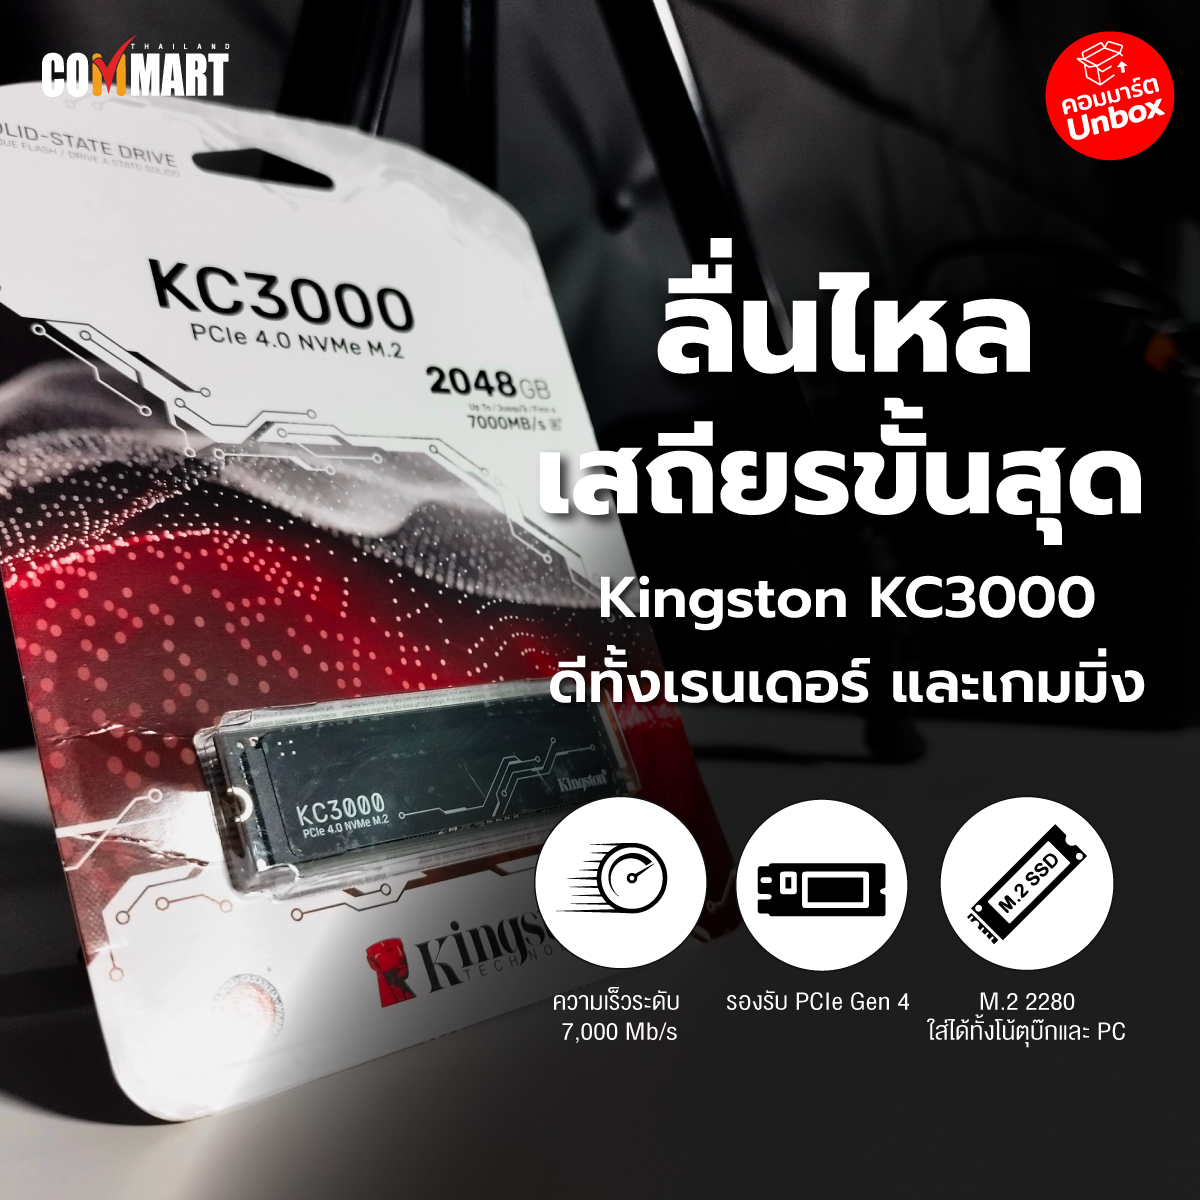 รีวิว : Kingston KC3000 ลื่นไหลเสถียร 7,000Mb/s ดีทั้งเรนเดอร์และเกมมิ่ง